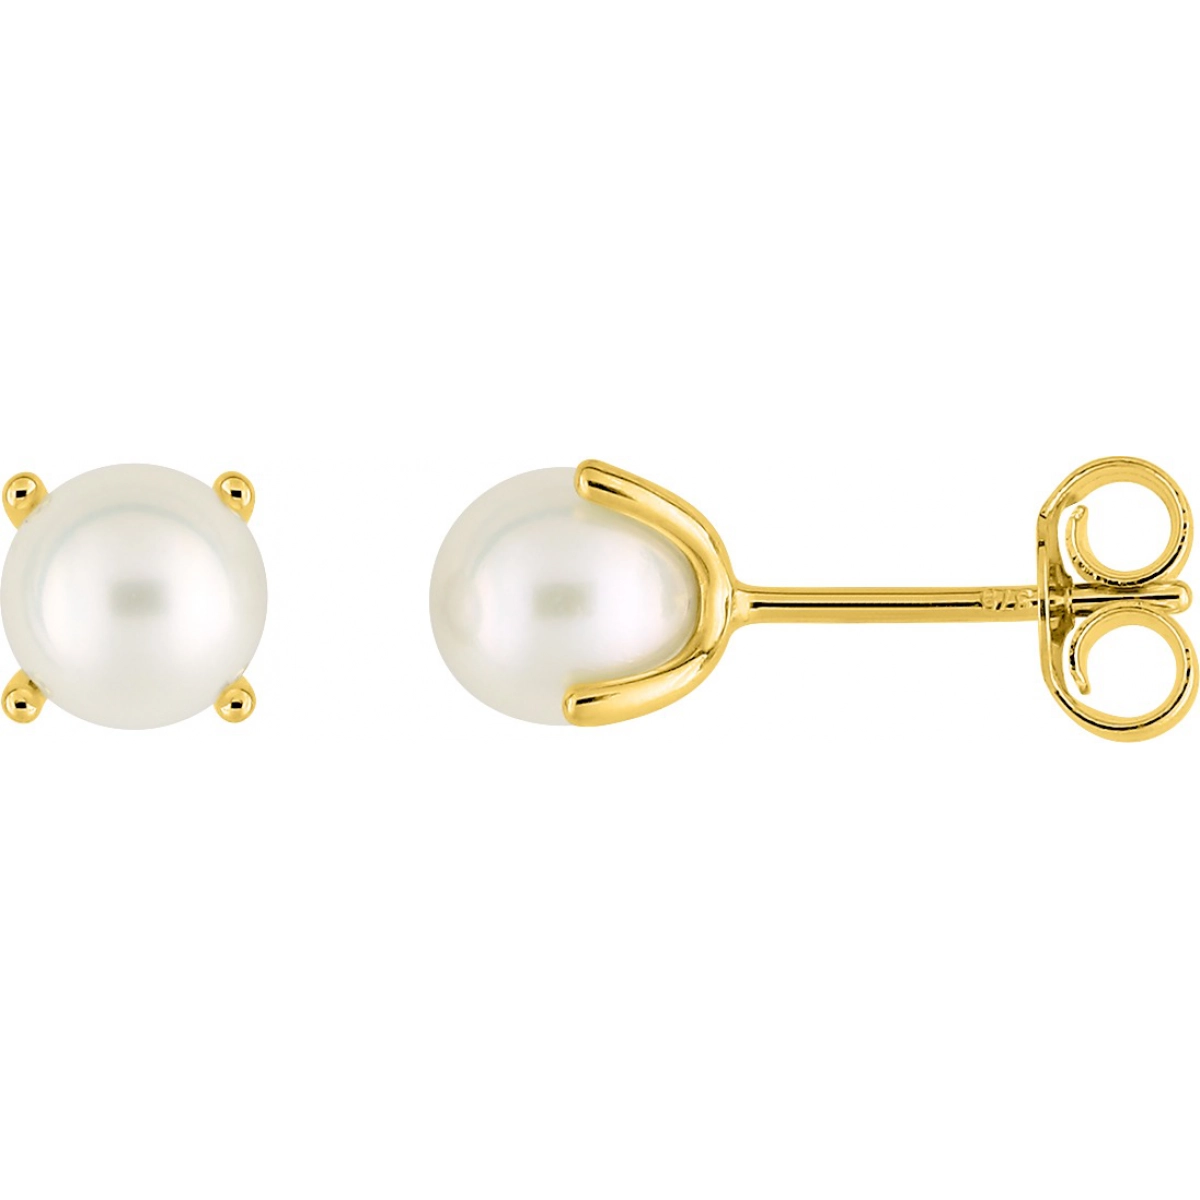 Earrings pair w. cultured FW pearl 9K YG  Lua Blanca  297159.P0.0